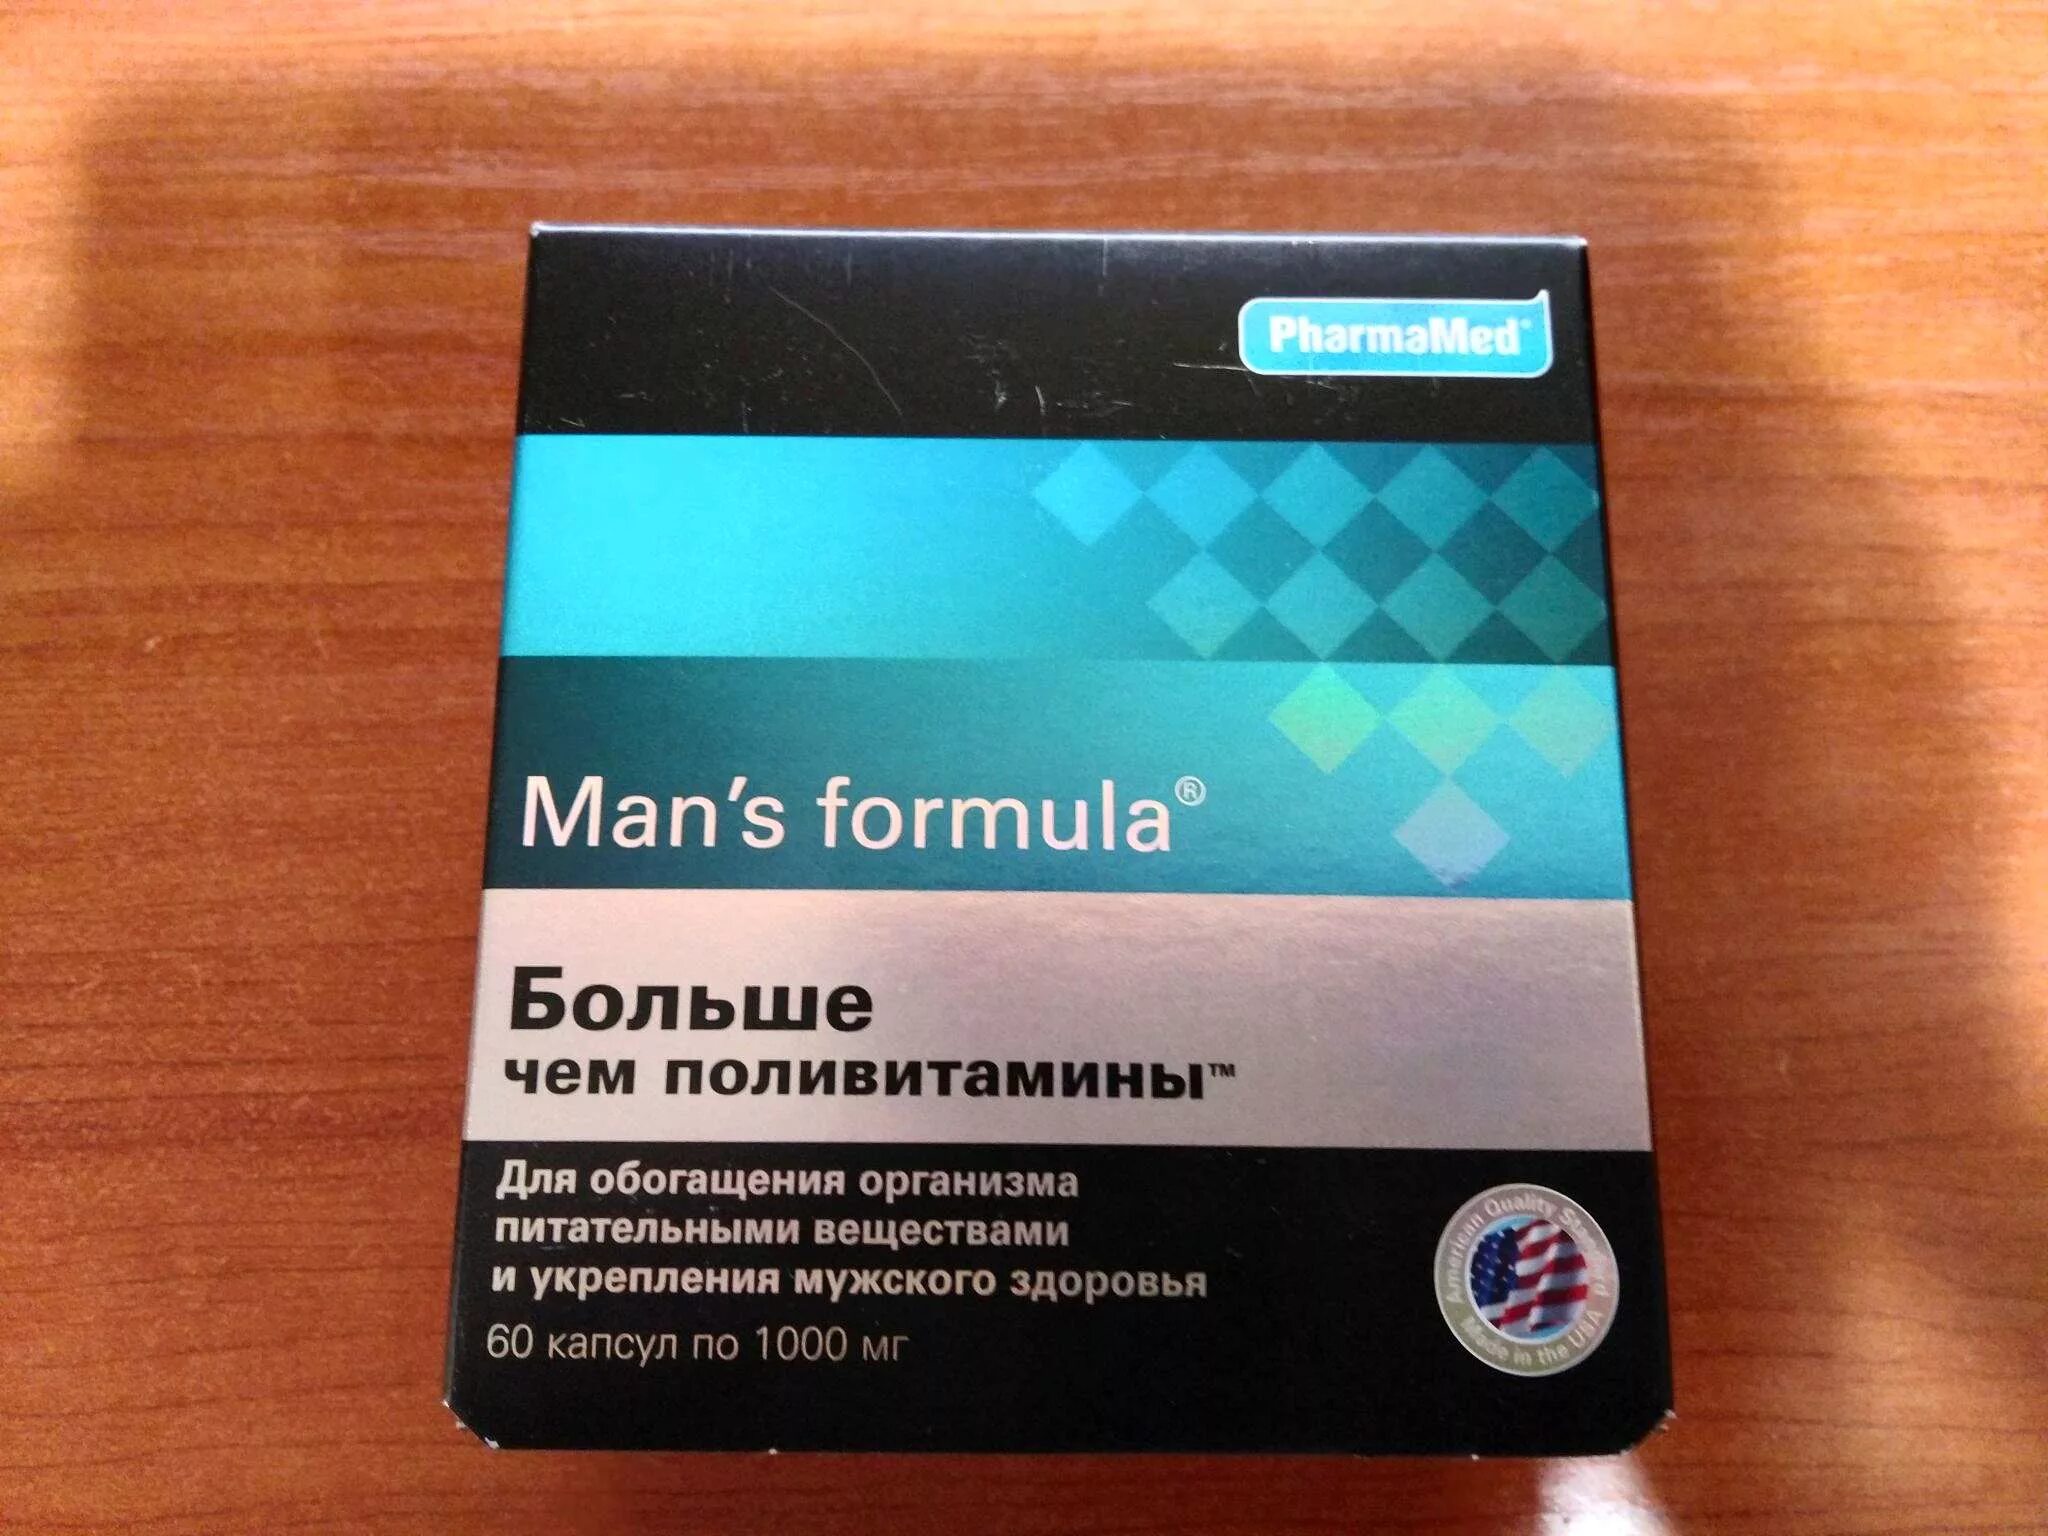 Менс потенциал форте. Mans Formula витамины для мужчин. Formula man's (больше,чем поливитамины капс n60 Вн ). Витамины man's Formula потенциал форте. Купить мужские витамины